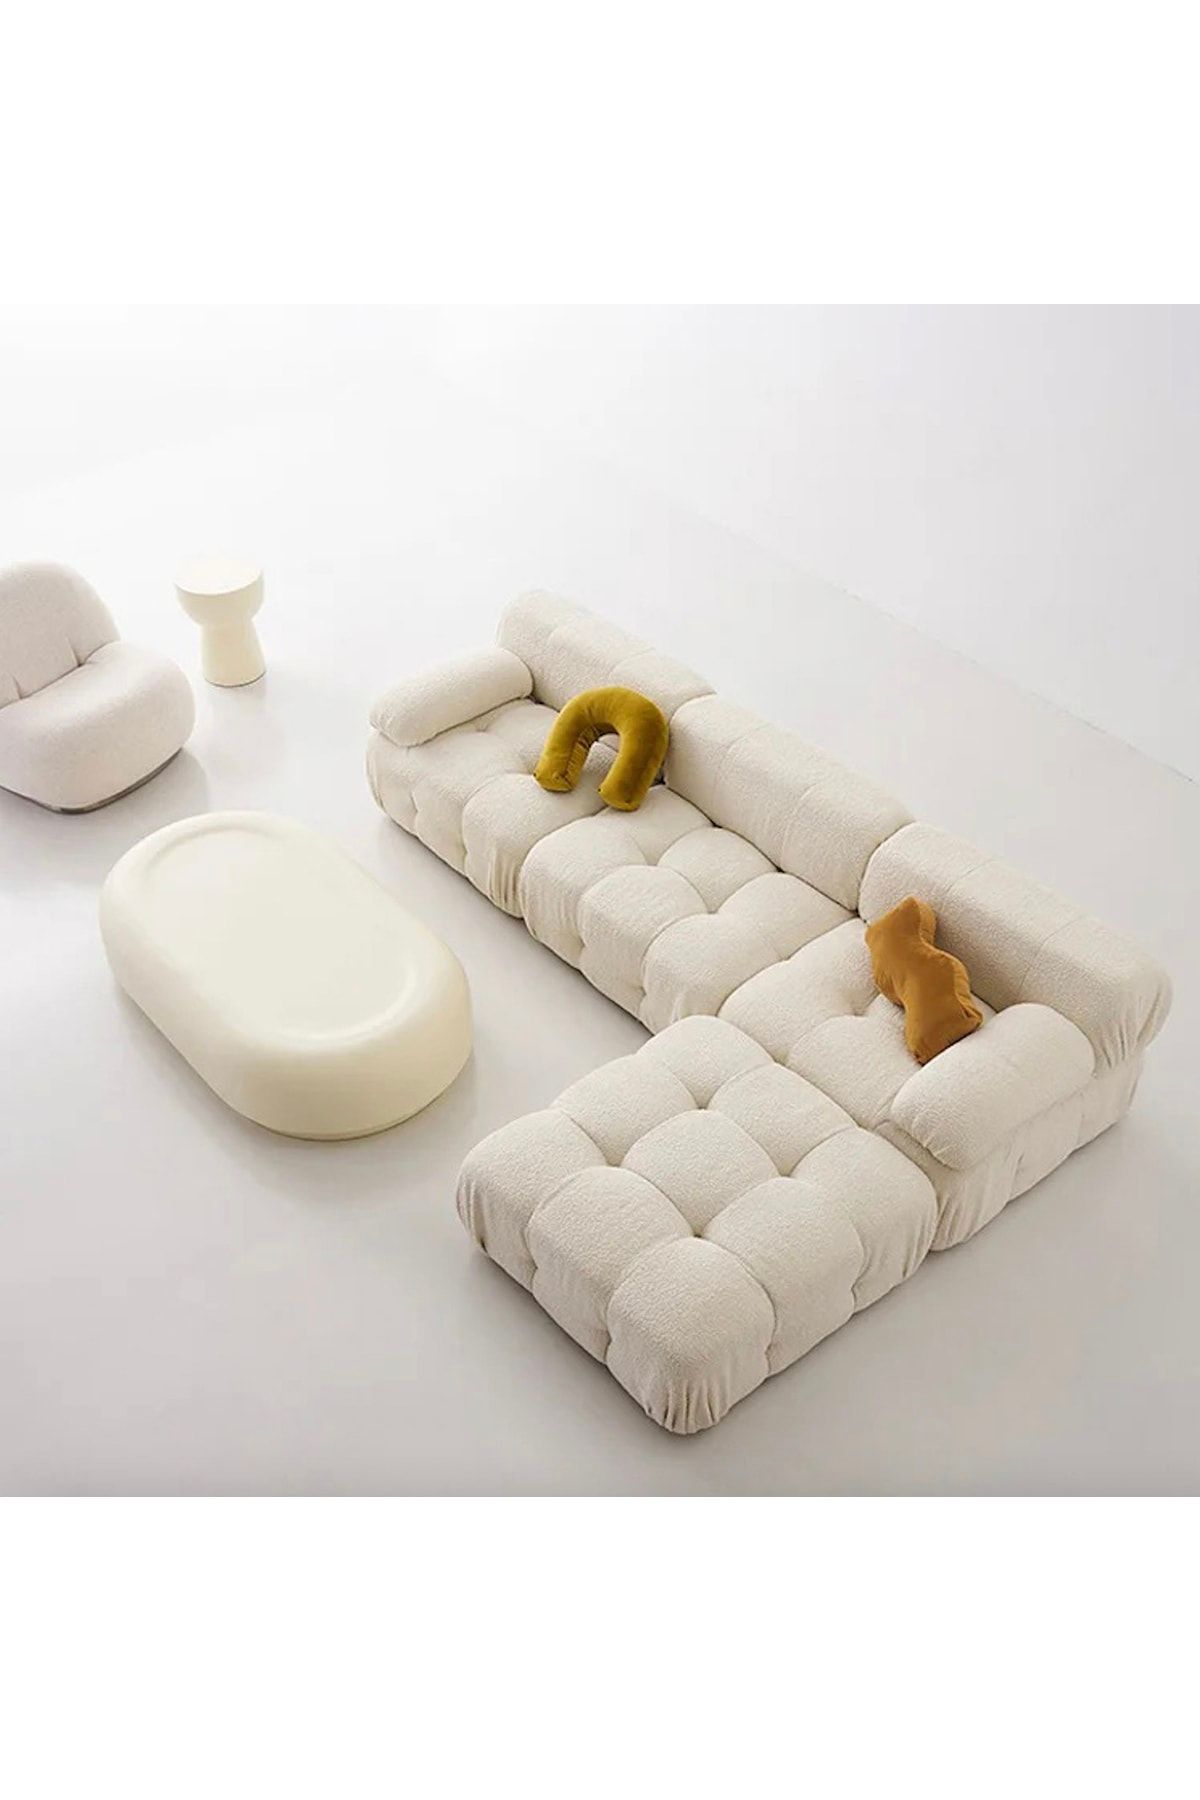 S Home Design Concept Bellini 4 Modül Modüler Koltuk Köşe Takımı, Teddy, Beyaz